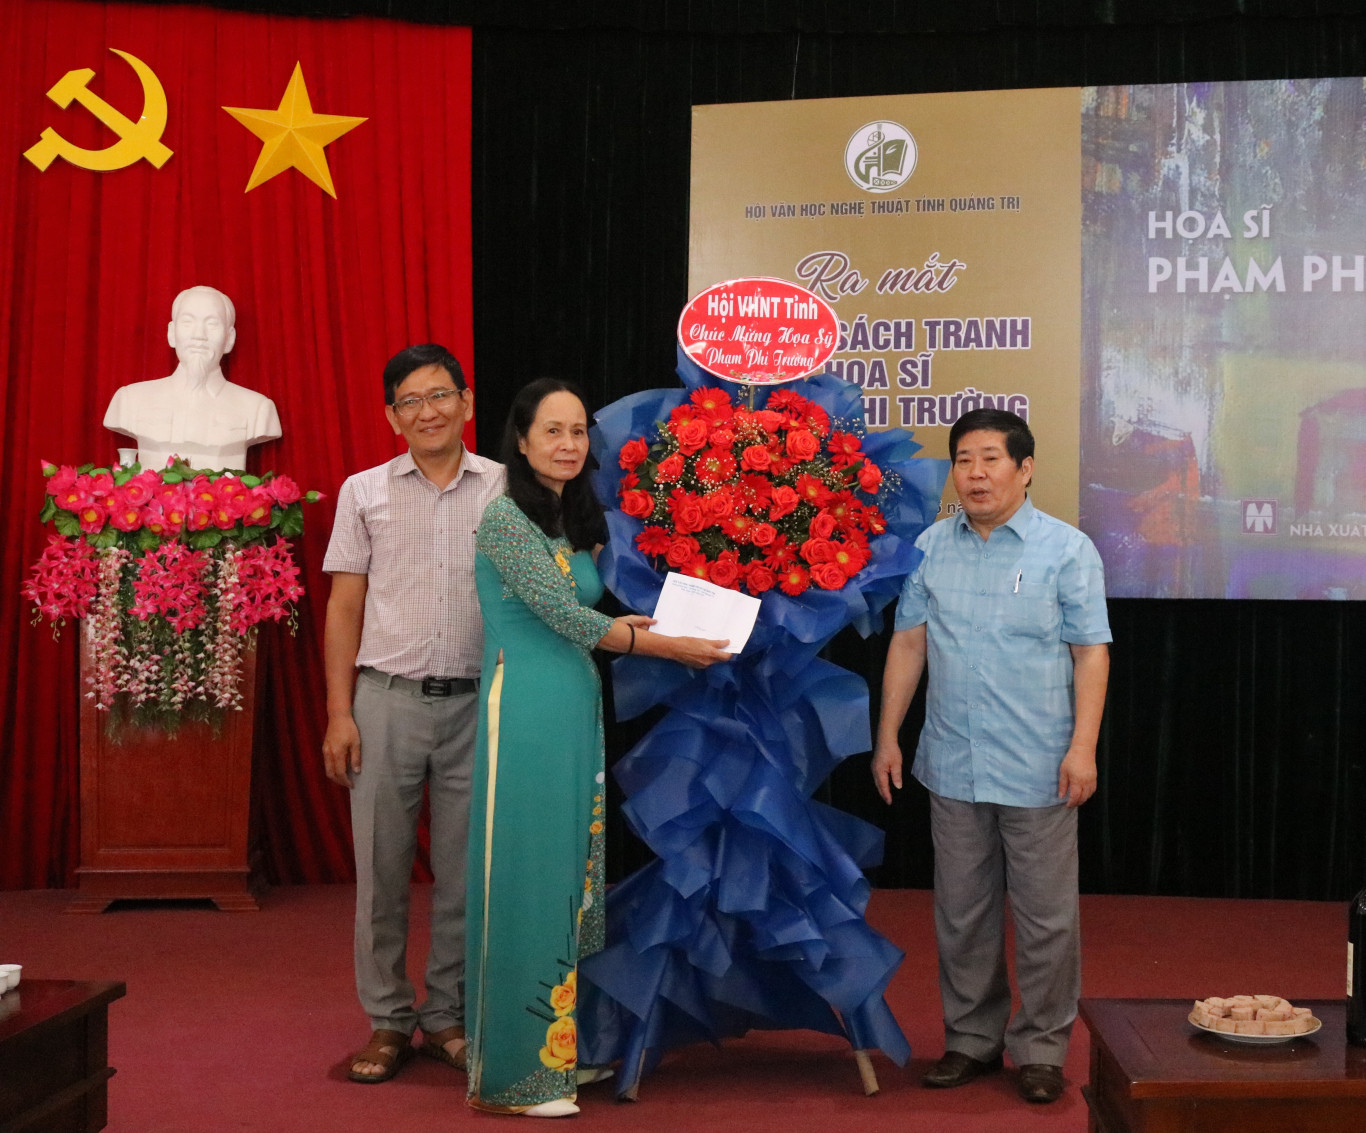 Đồng chí Nguyễn Văn Dùng, Chủ tịch Hội VHNT tỉnh Quảng Trị tặng hoa cho gia đình họa sĩ 